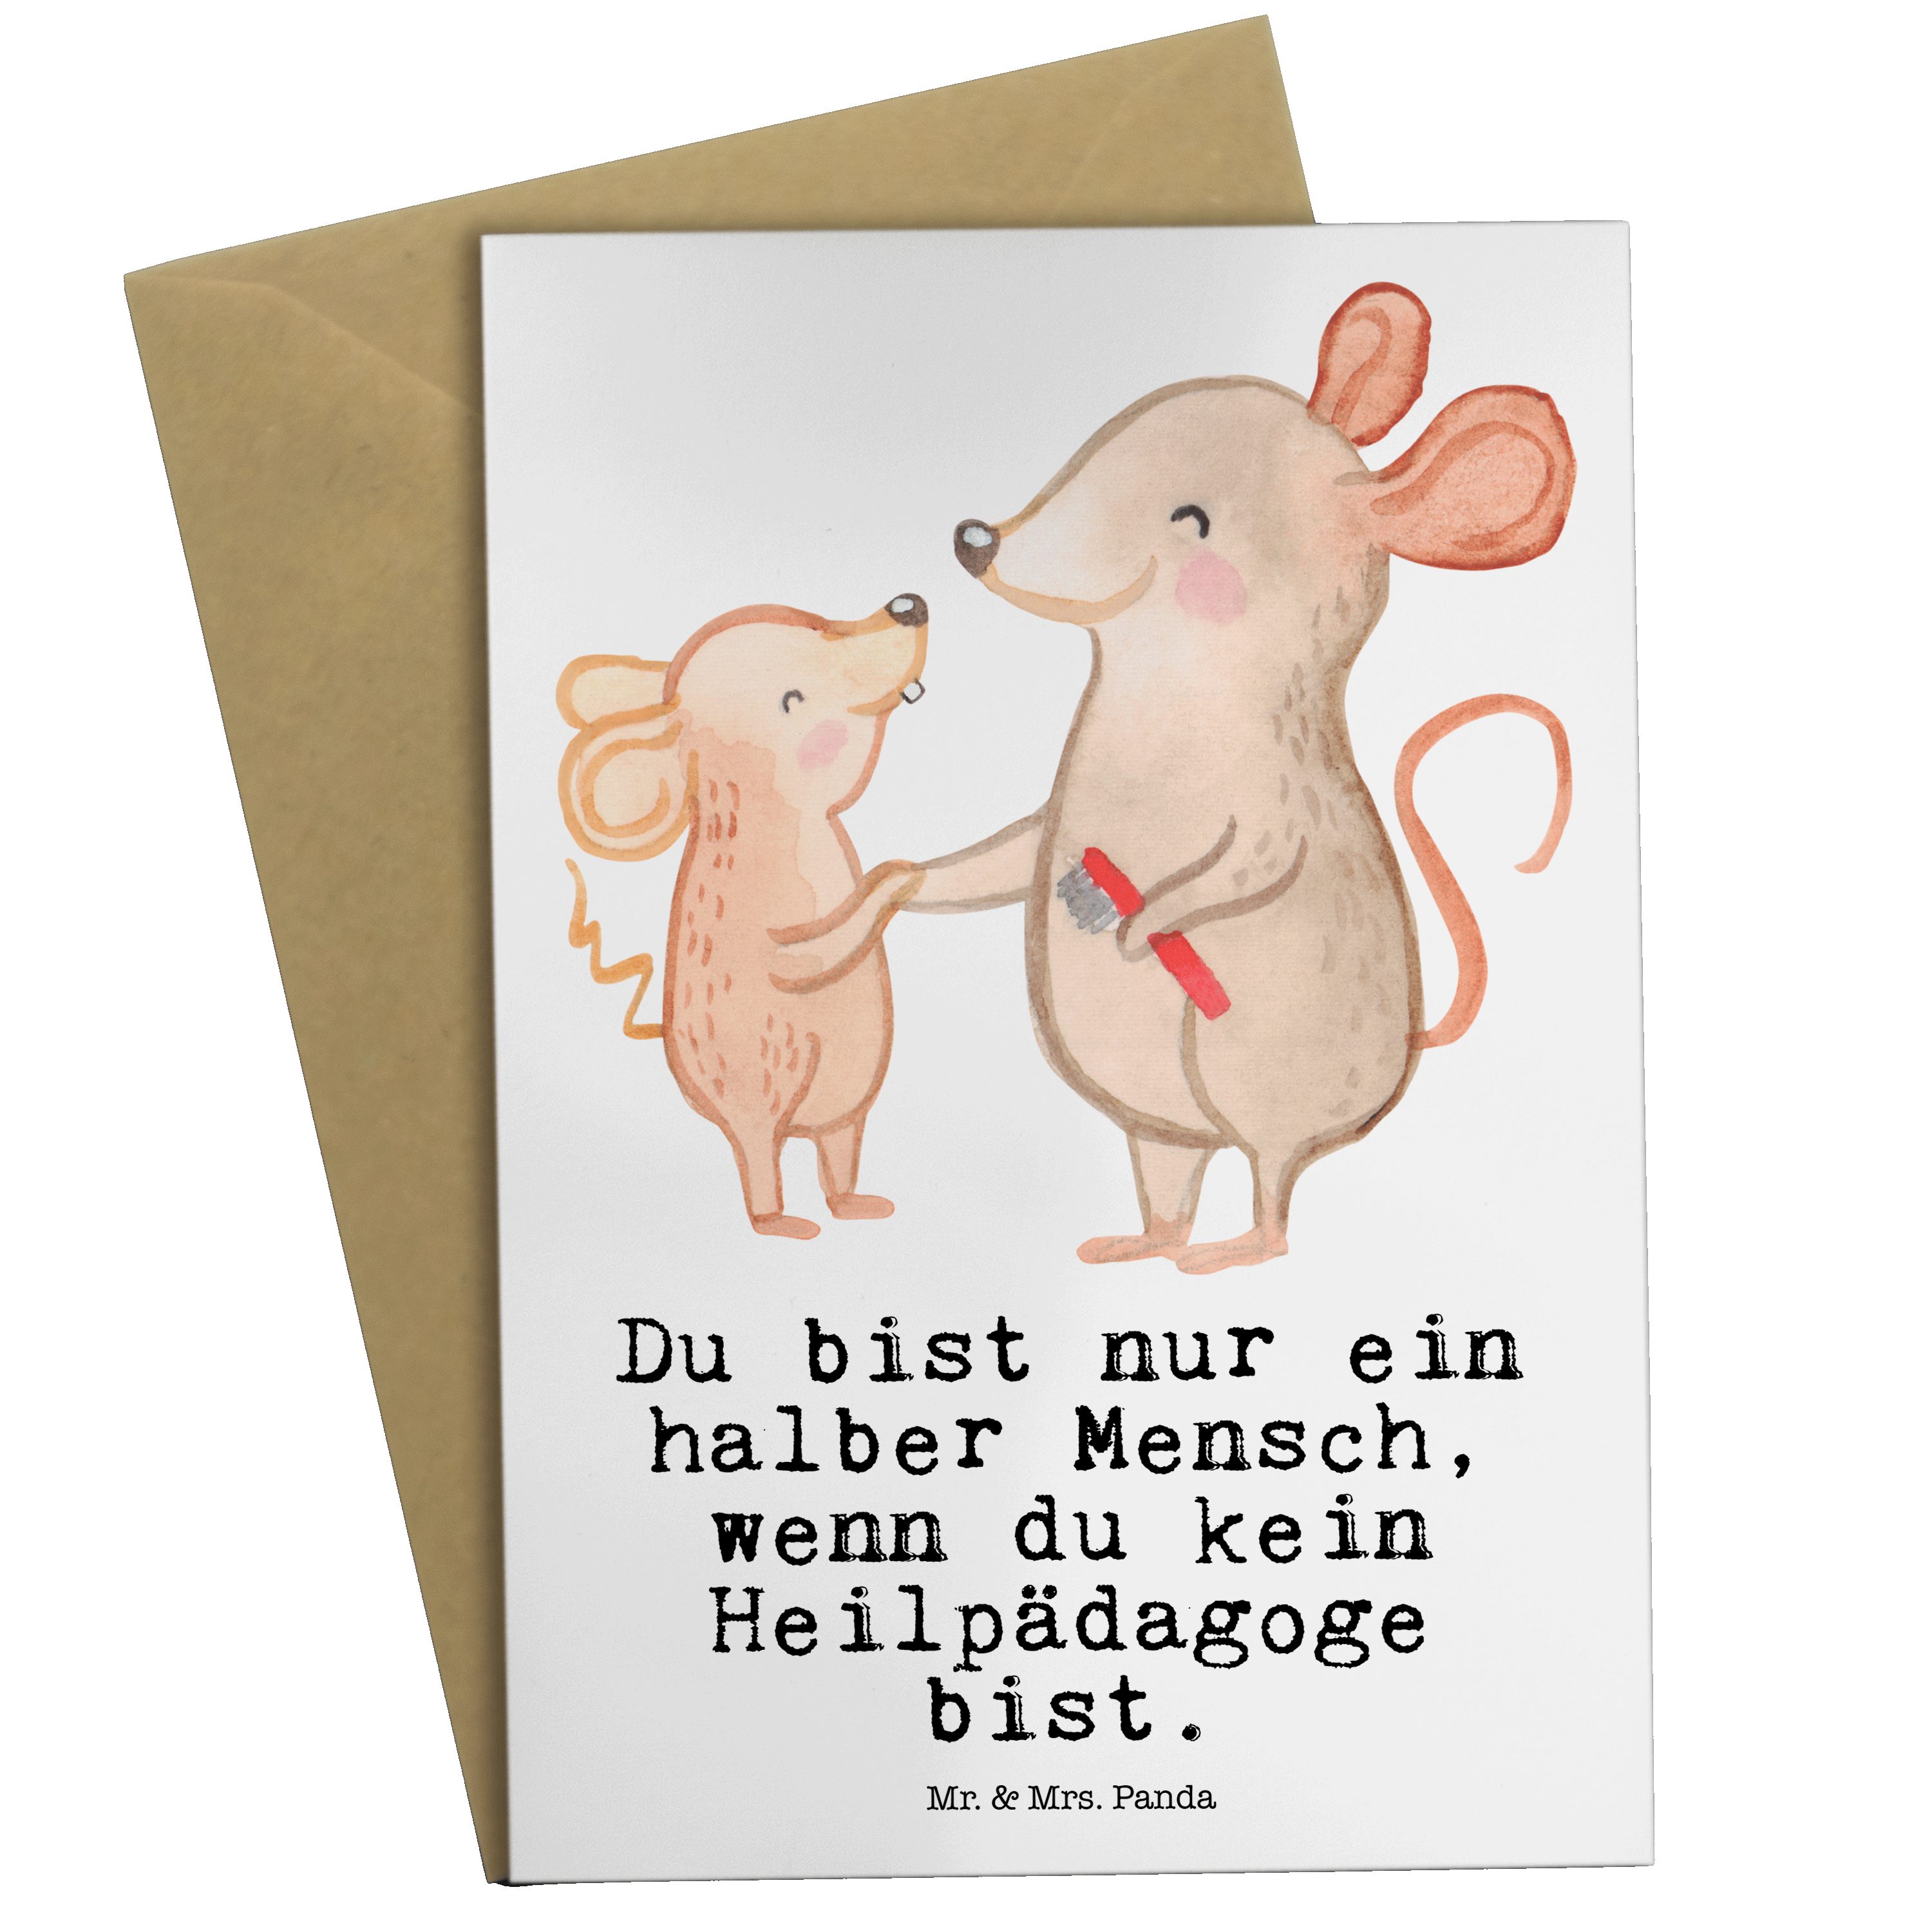 Mr. & Mrs. Panda Grußkarte Heilpädagoge mit Herz - Weiß - Geschenk, Geburtstagskarte, Einladungs